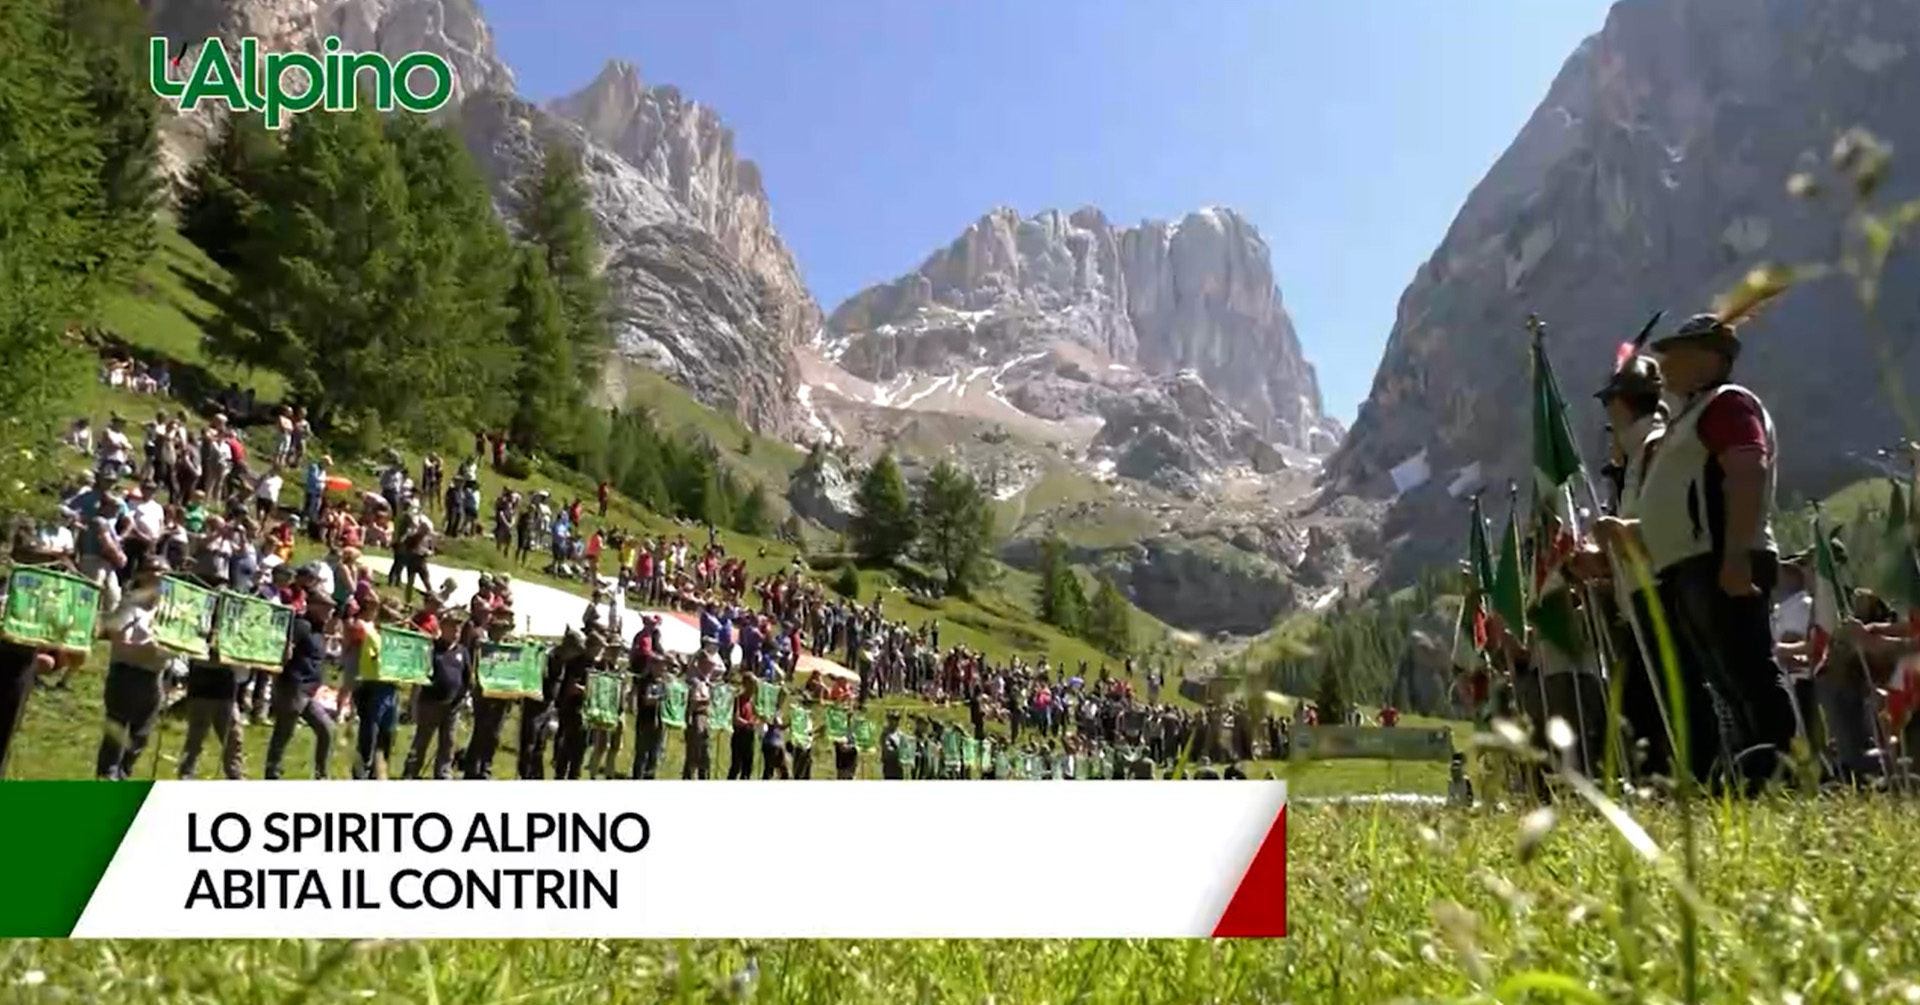 L'Alpino - Lo spirito alpino abita il Contrin